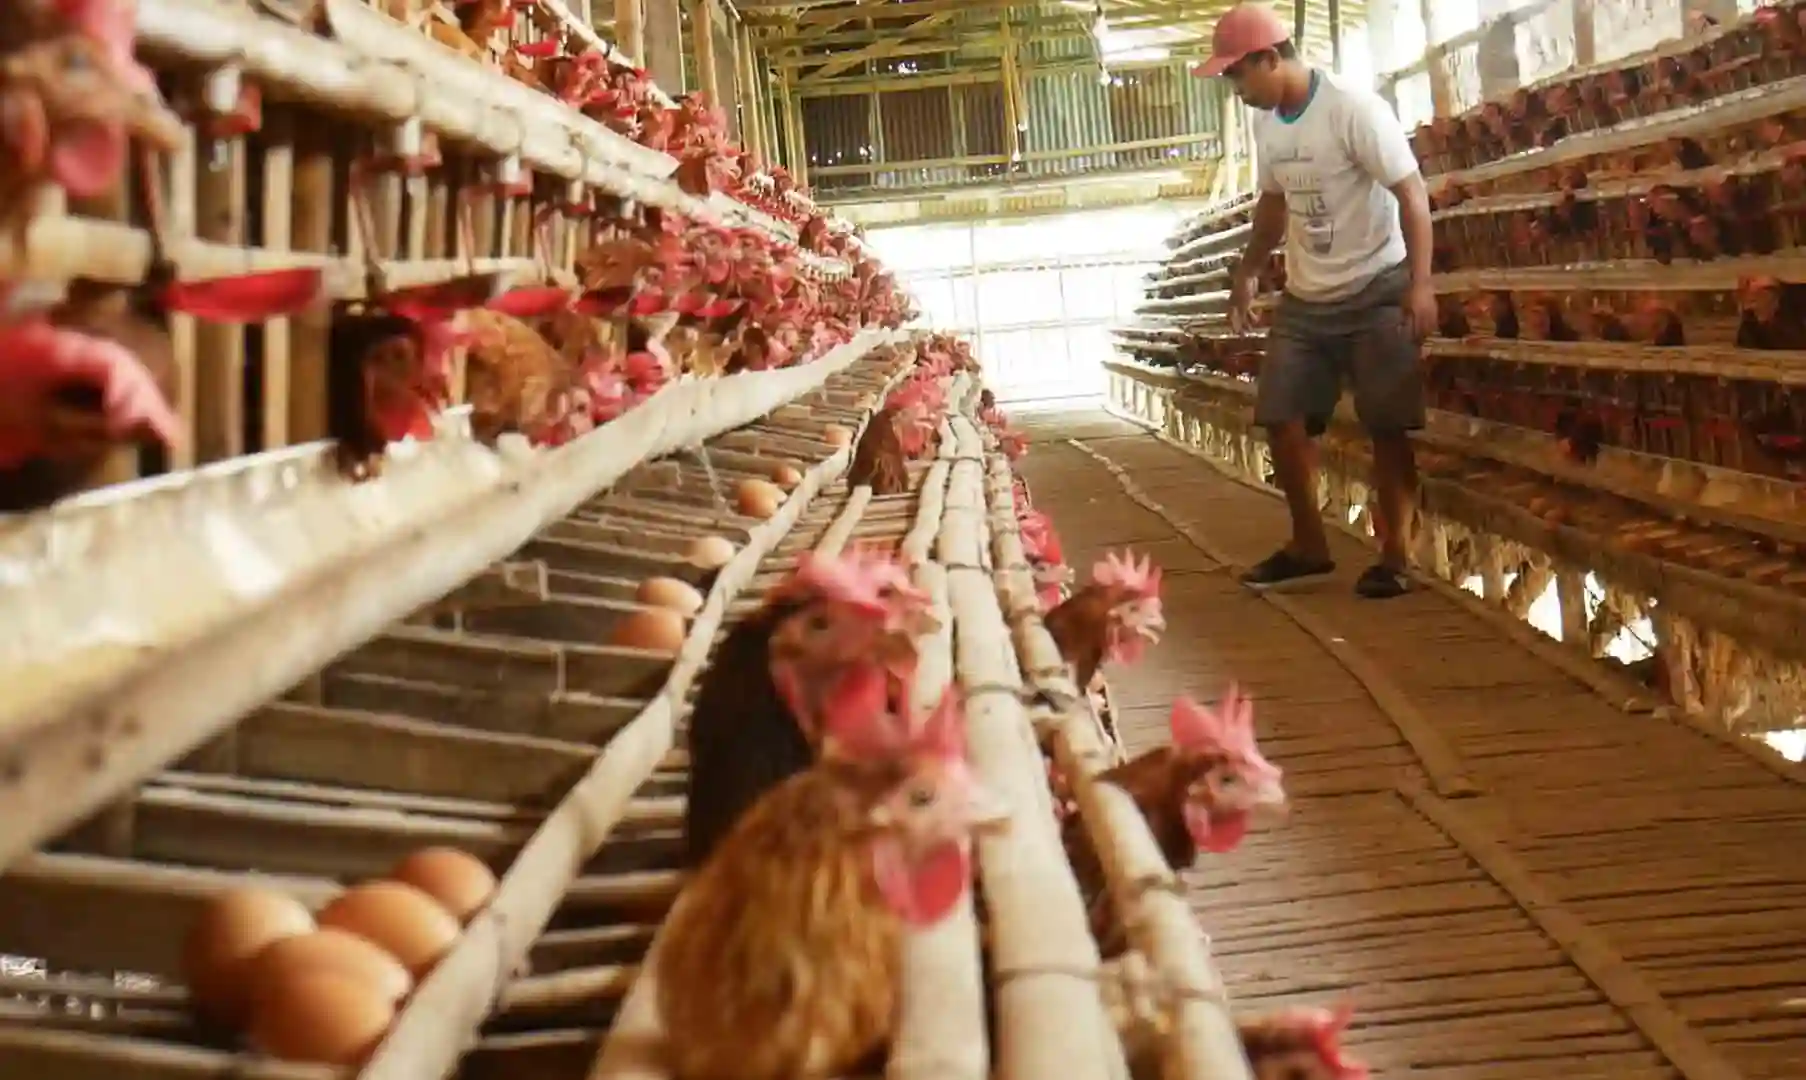 Bisnis ternak ayam petelur adalah salah satu usaha yang menjanjikan di sektor peternakan